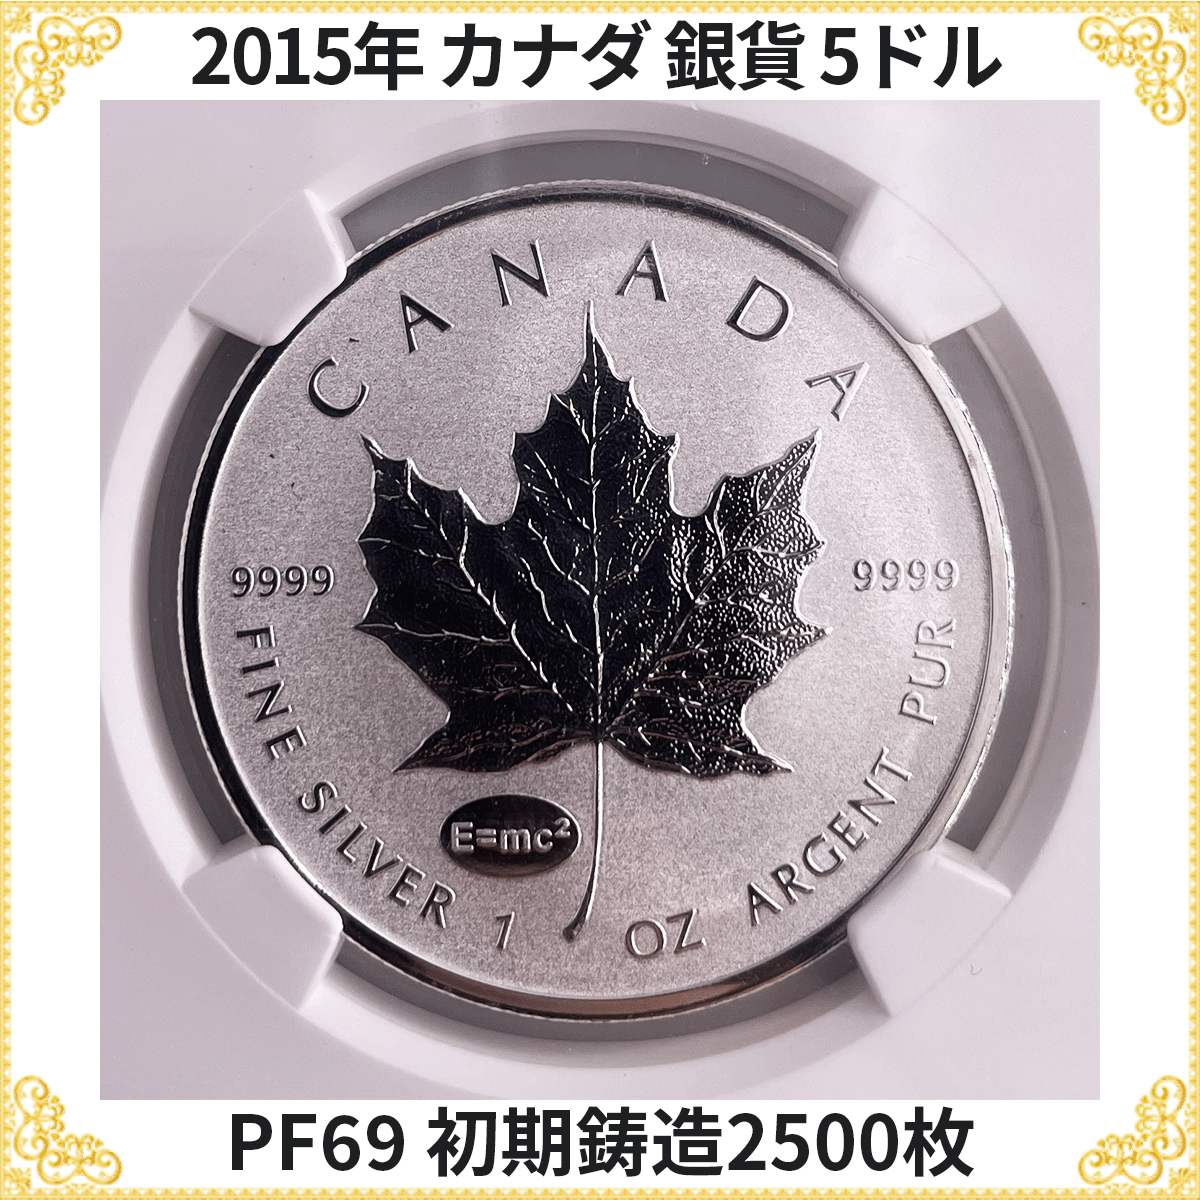 準最高鑑定 初期鋳造2500枚 2015年 カナダ 銀貨 メイプルリーフ NGC PF69 5ドル 純銀 モダンコイン 地金型銀貨(北アメリカ